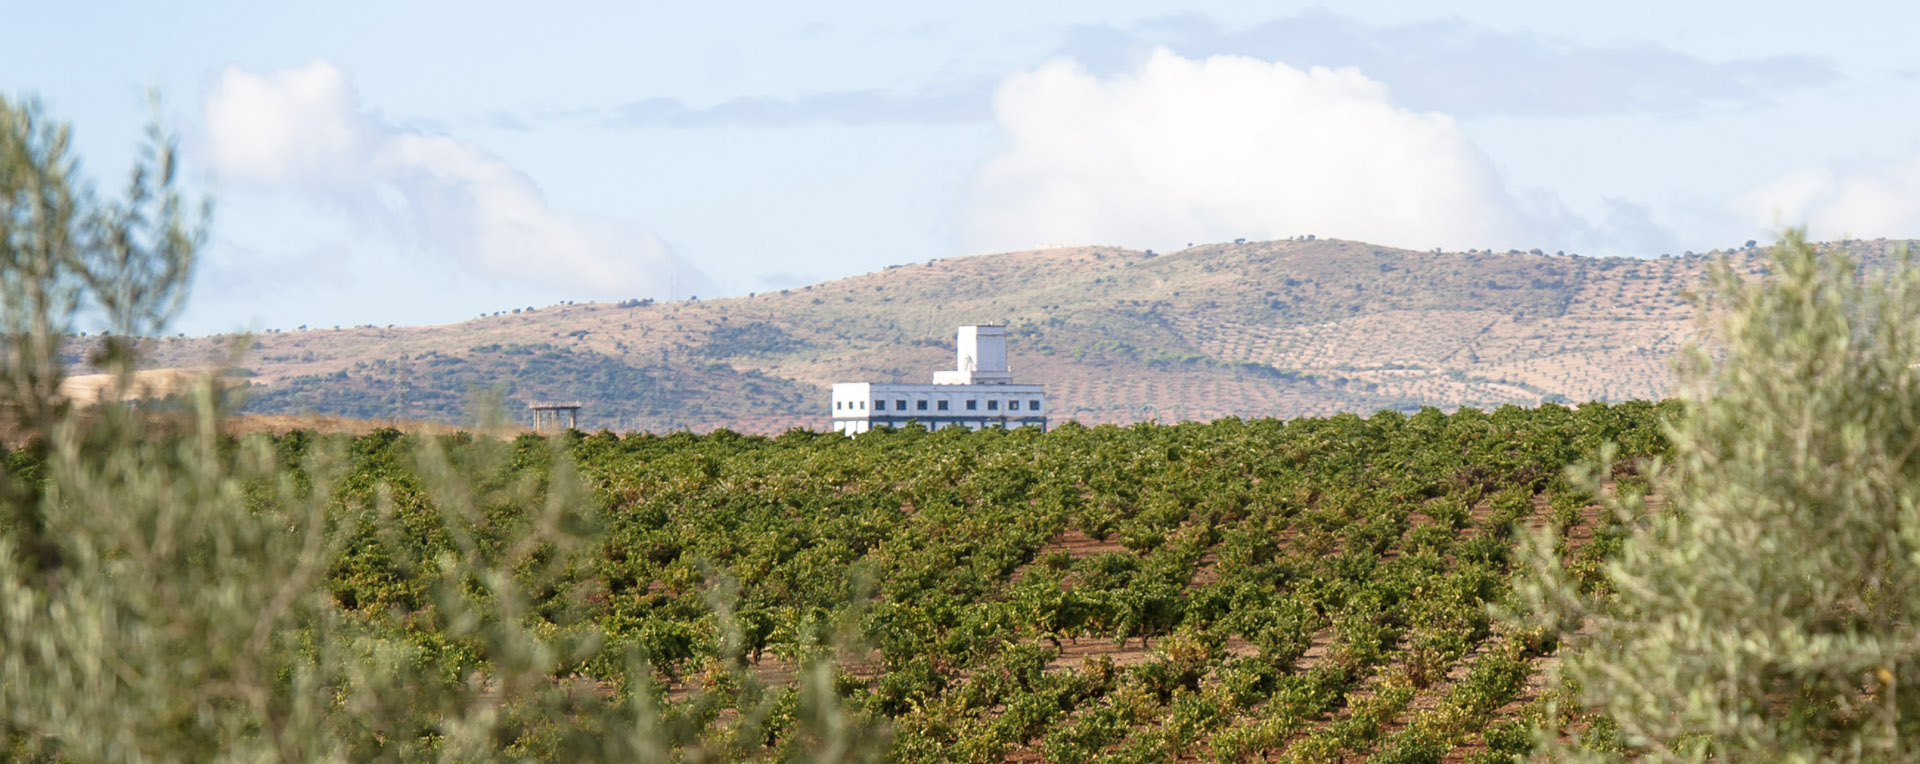 La Ruta del vino y del cava Ribera del Guadiana, premio nacional de enoturismo